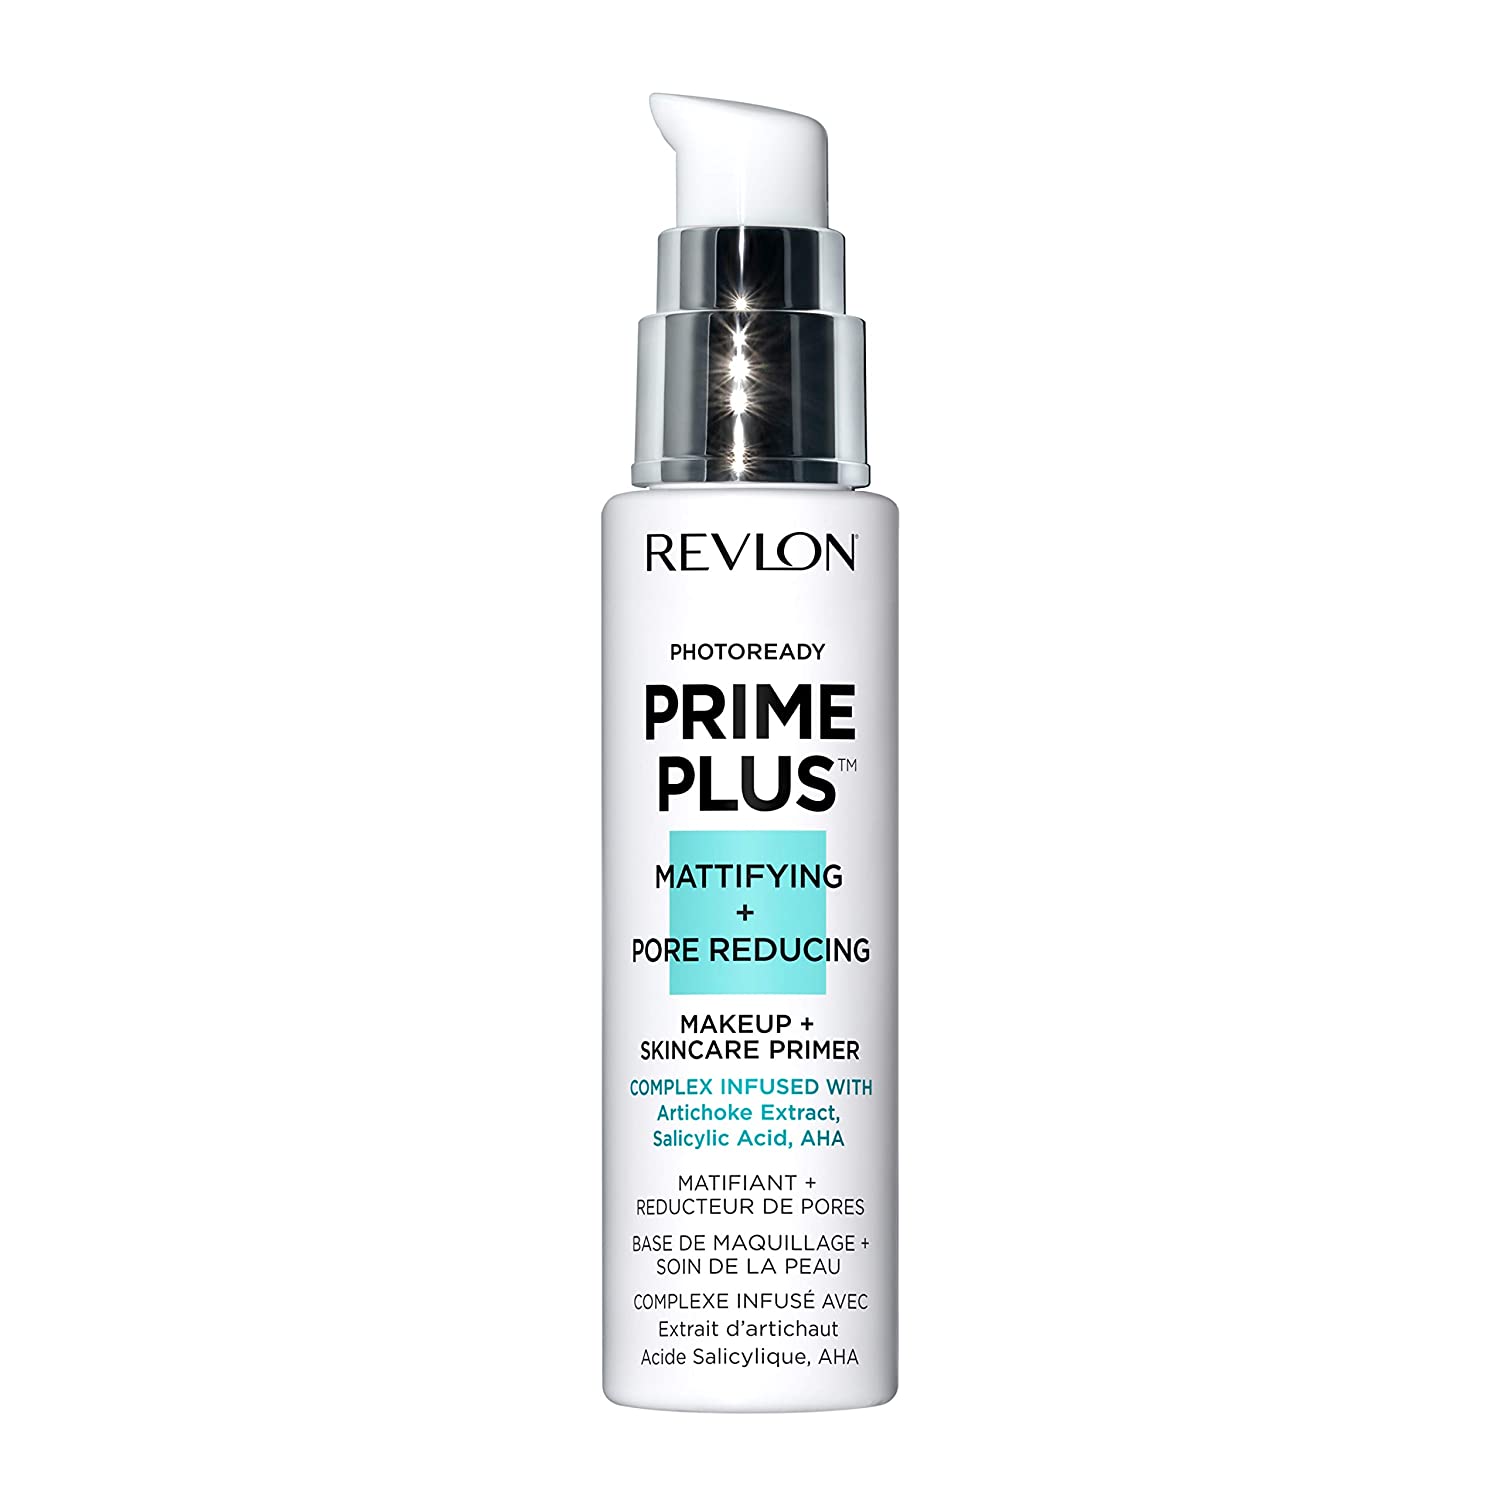 Revlon Prime Plus Makeup & Skincare Primer